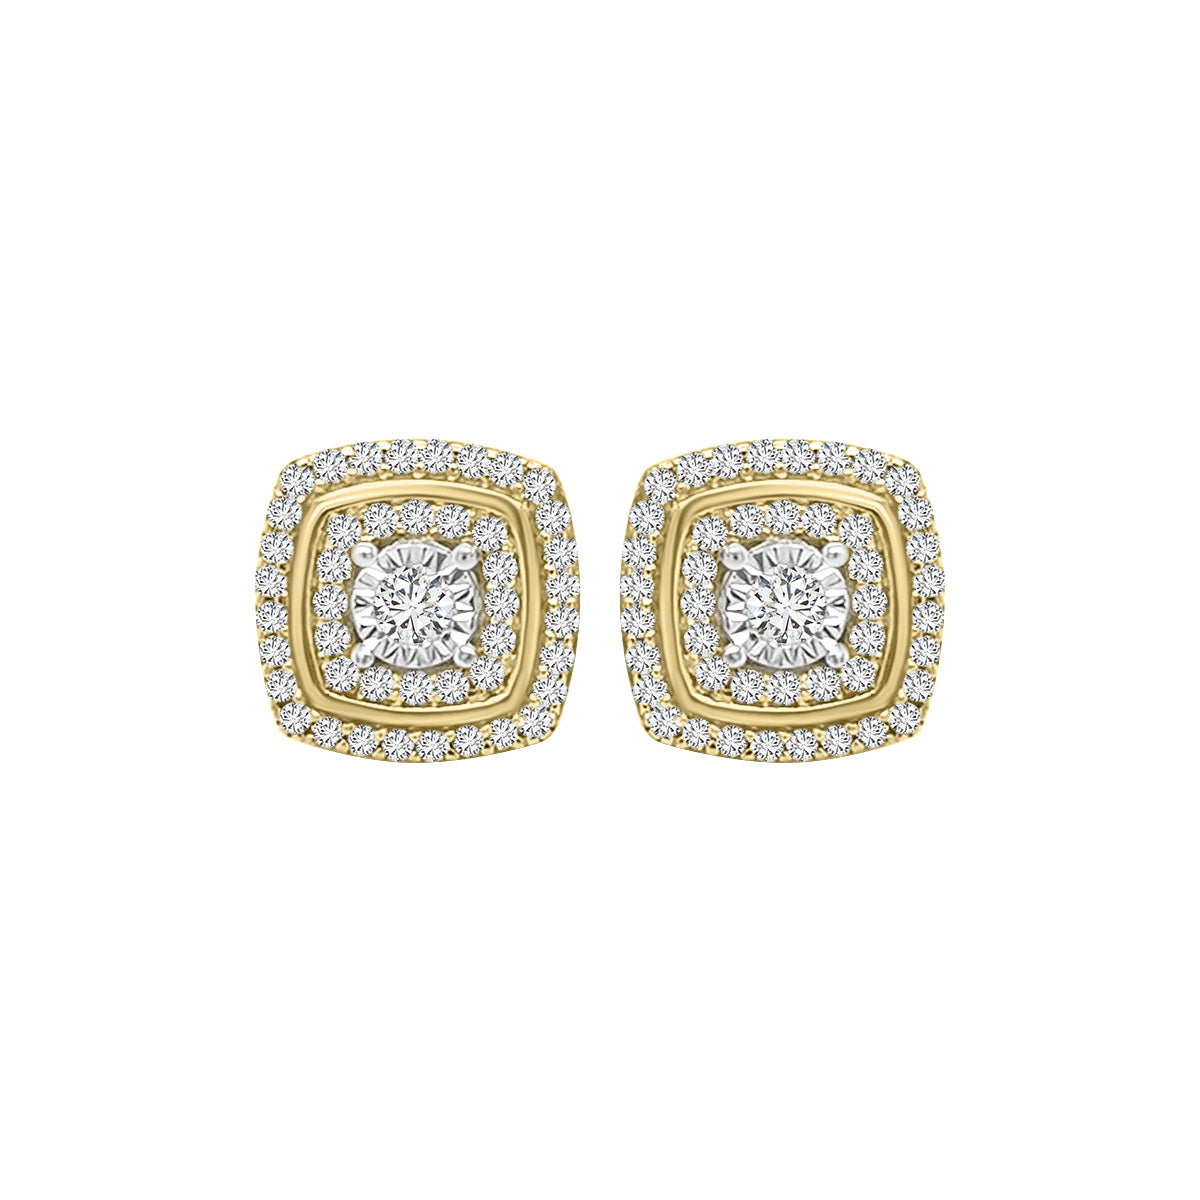 Diamond Stud Earrings In 18k Yellow Gold.